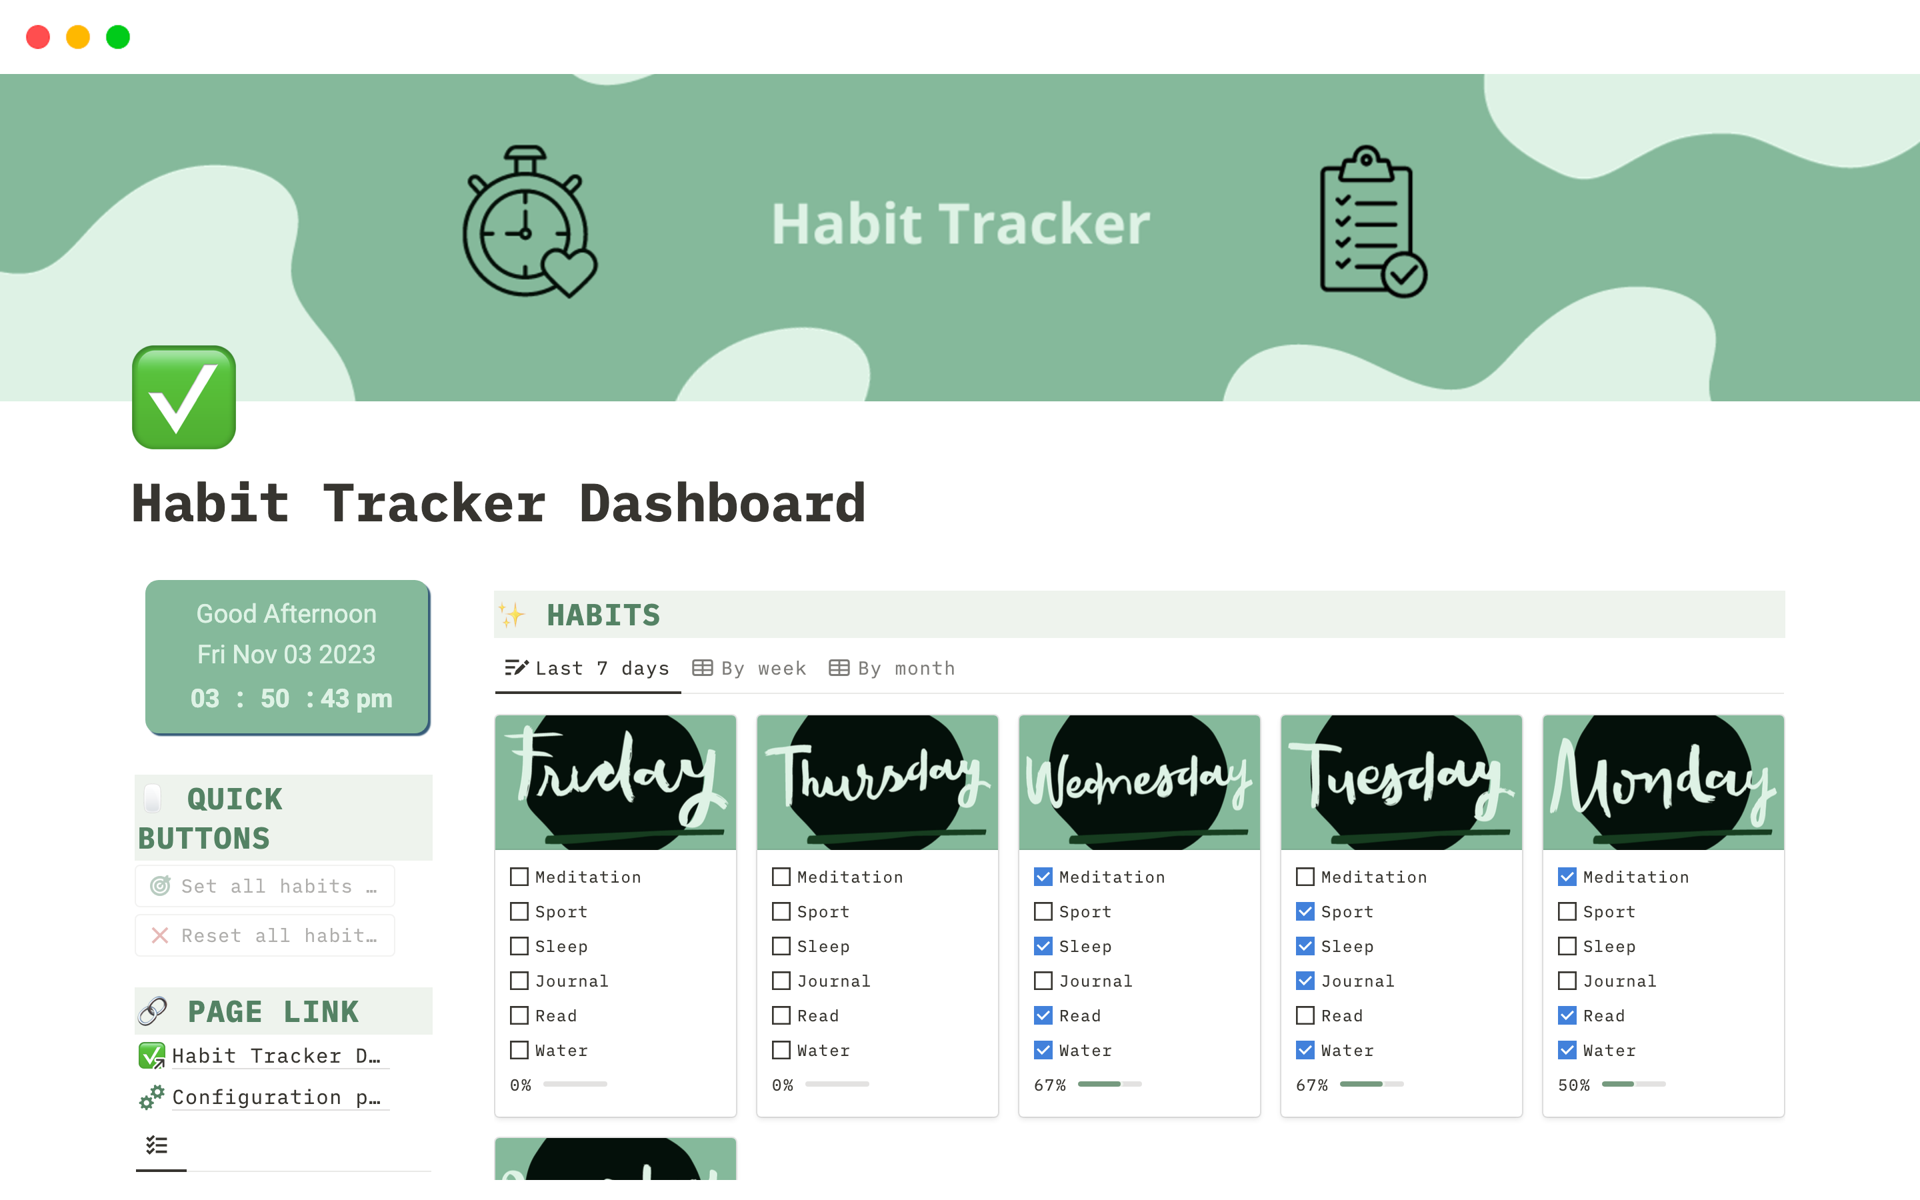 Vista previa de plantilla para Simple Habit Tracker